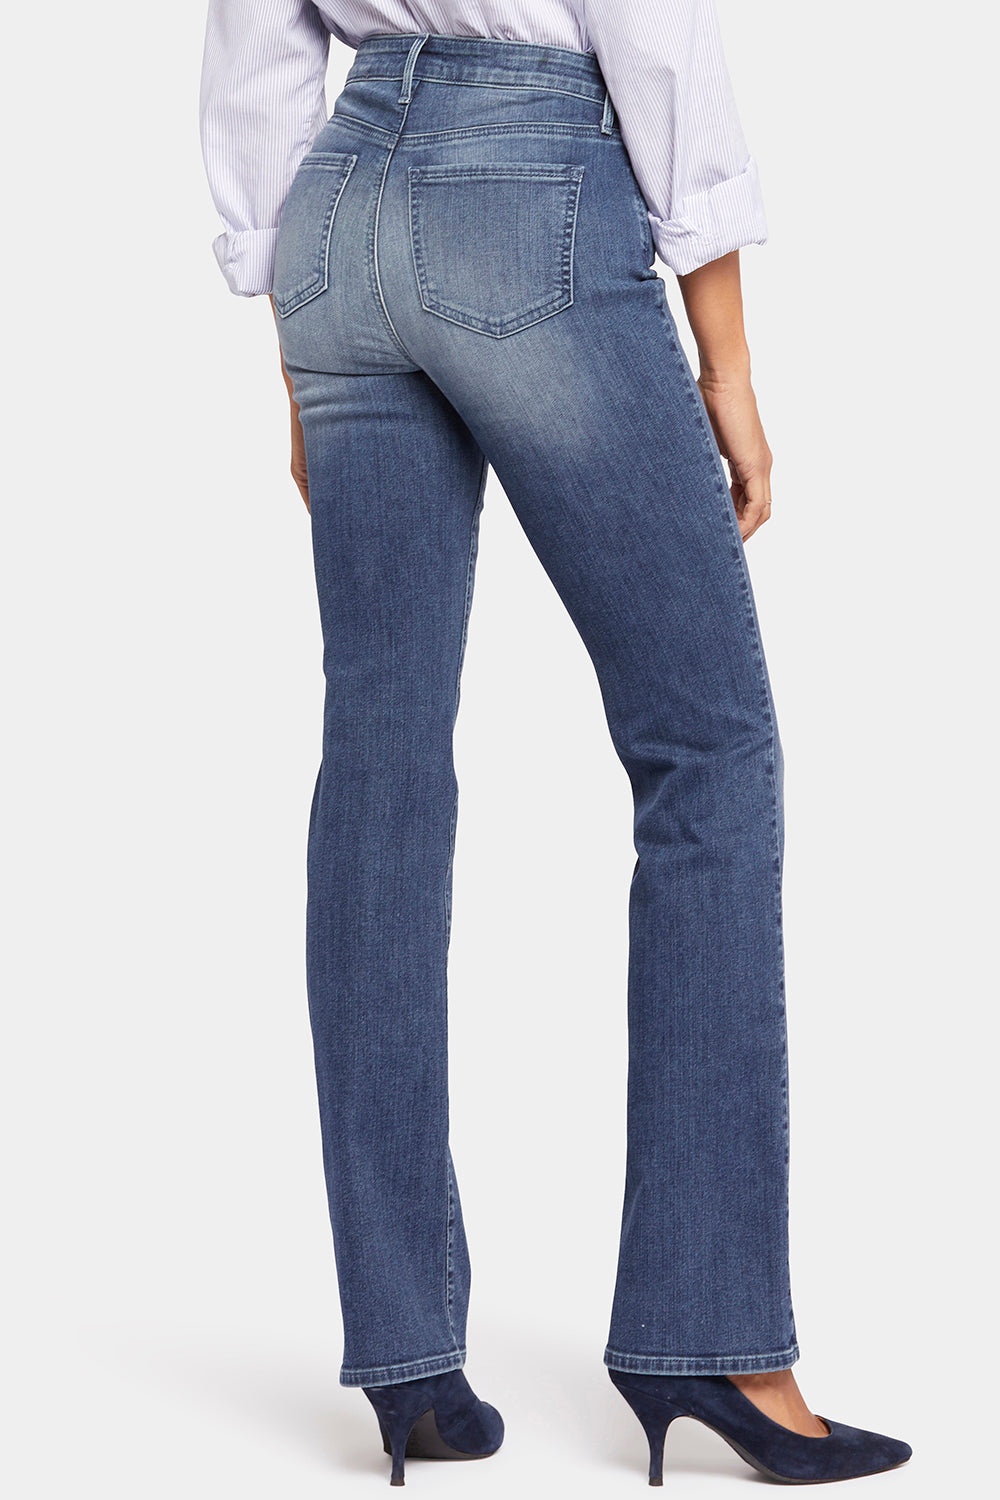 NYDJ Barbara Bootcut Jeans In Long Inseam  - Landslide